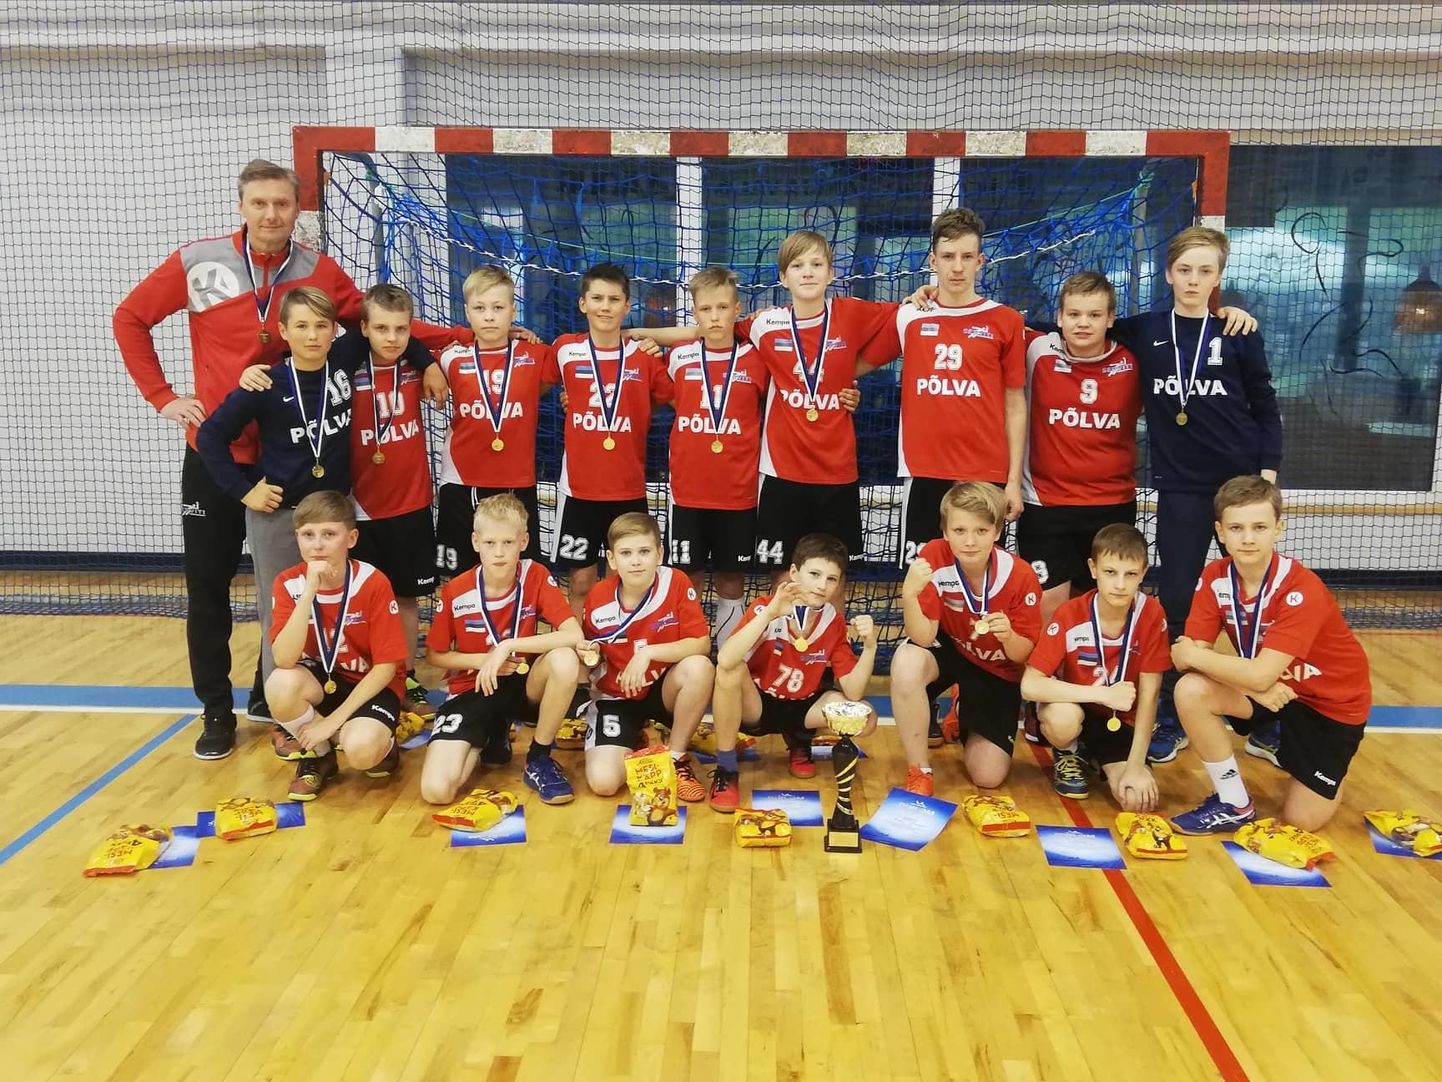 Noored Eesti meistrid koos treener Rein Suvega Põlva Spordikool